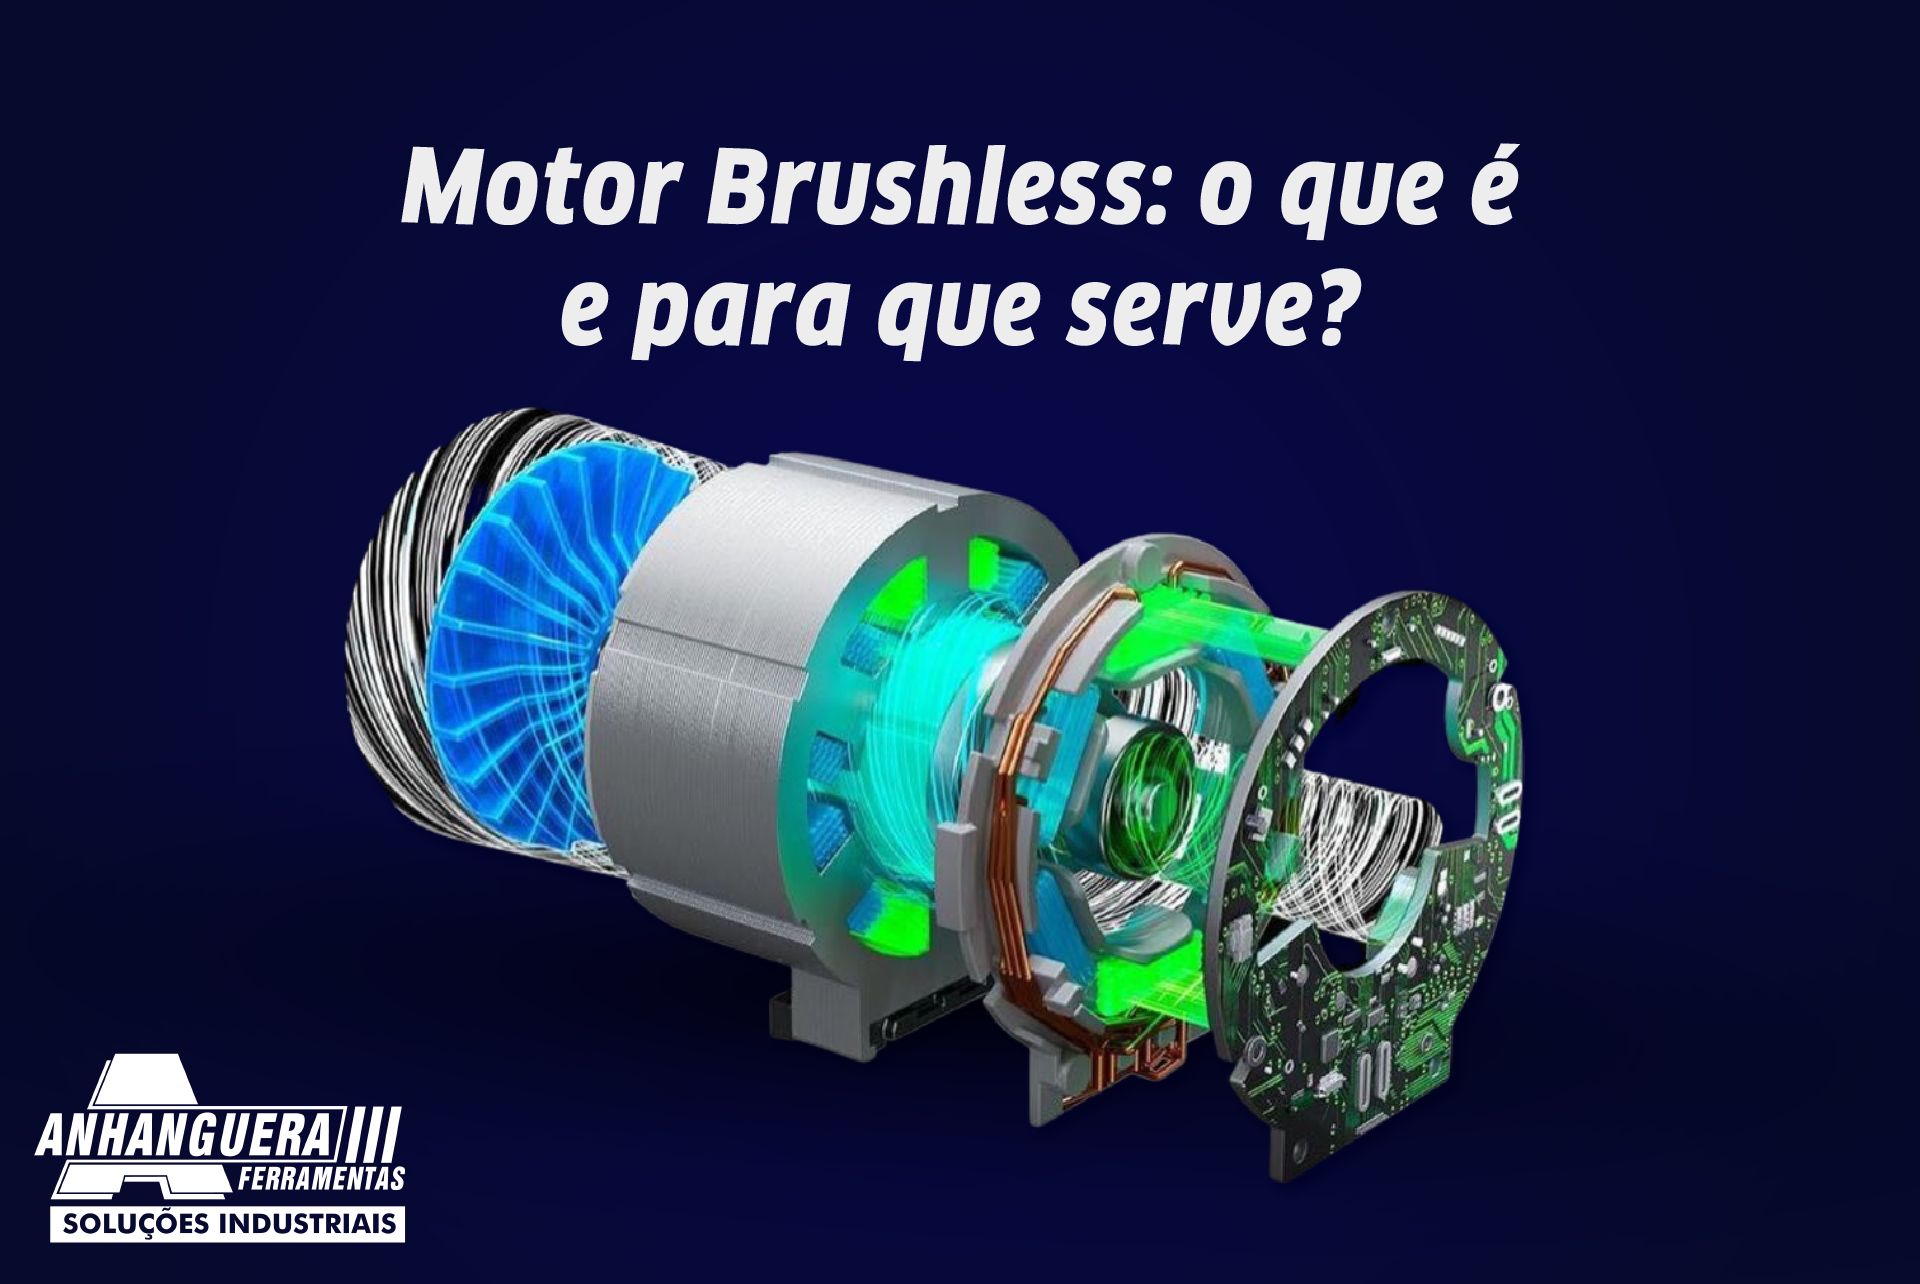 Motor Brushless: o que é e para que serve?